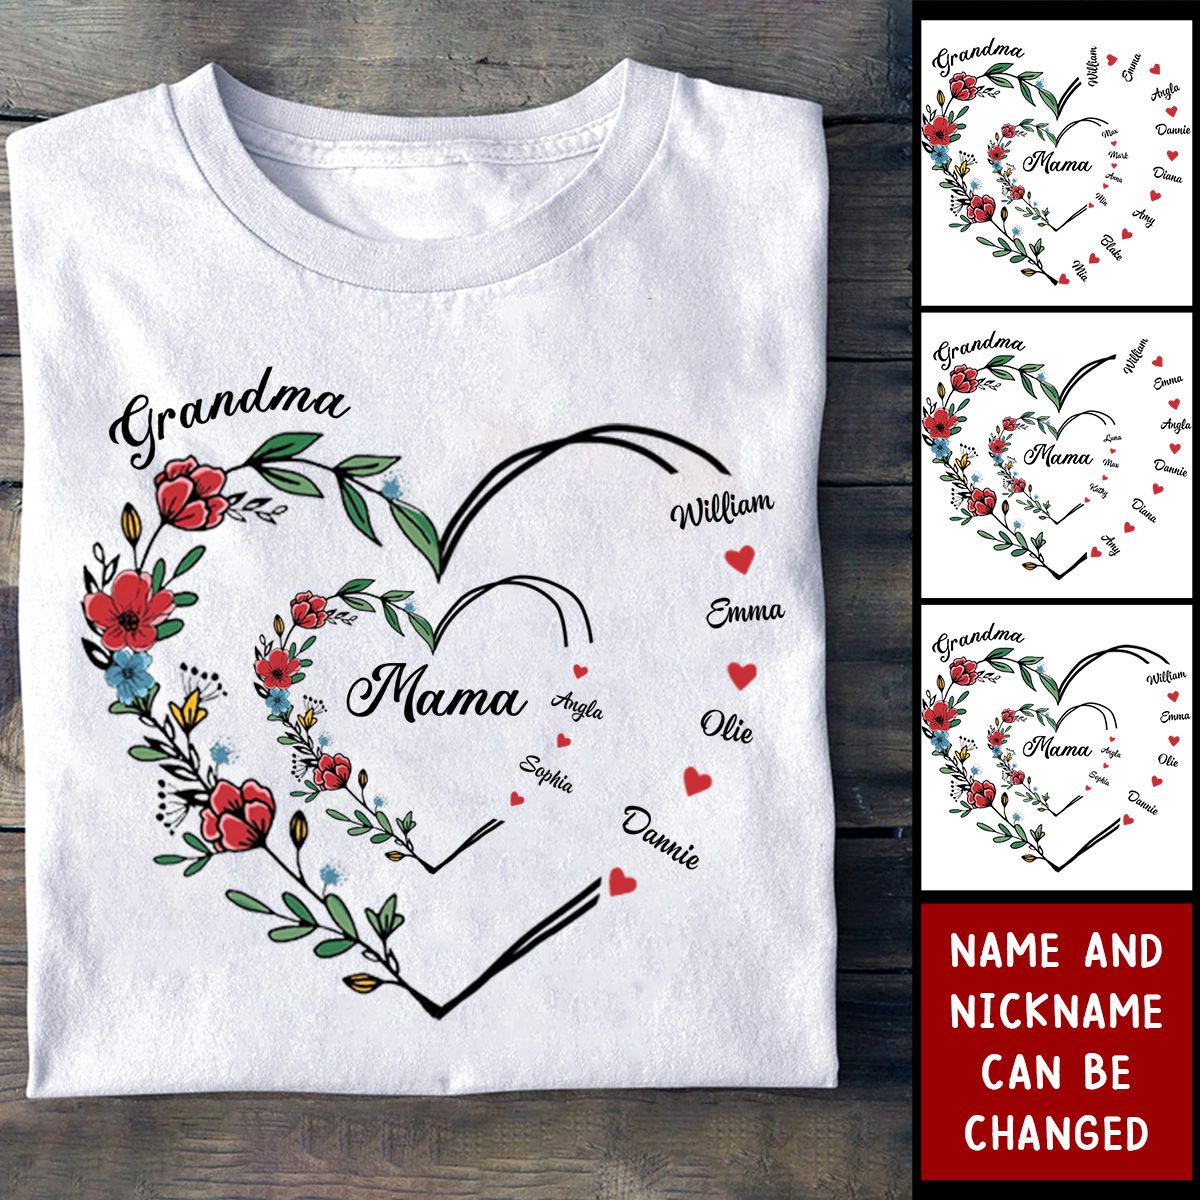 I Love You Forever & Always - Family Personalized Custom Unisex T-shirt - Gift For Mom, Grandma